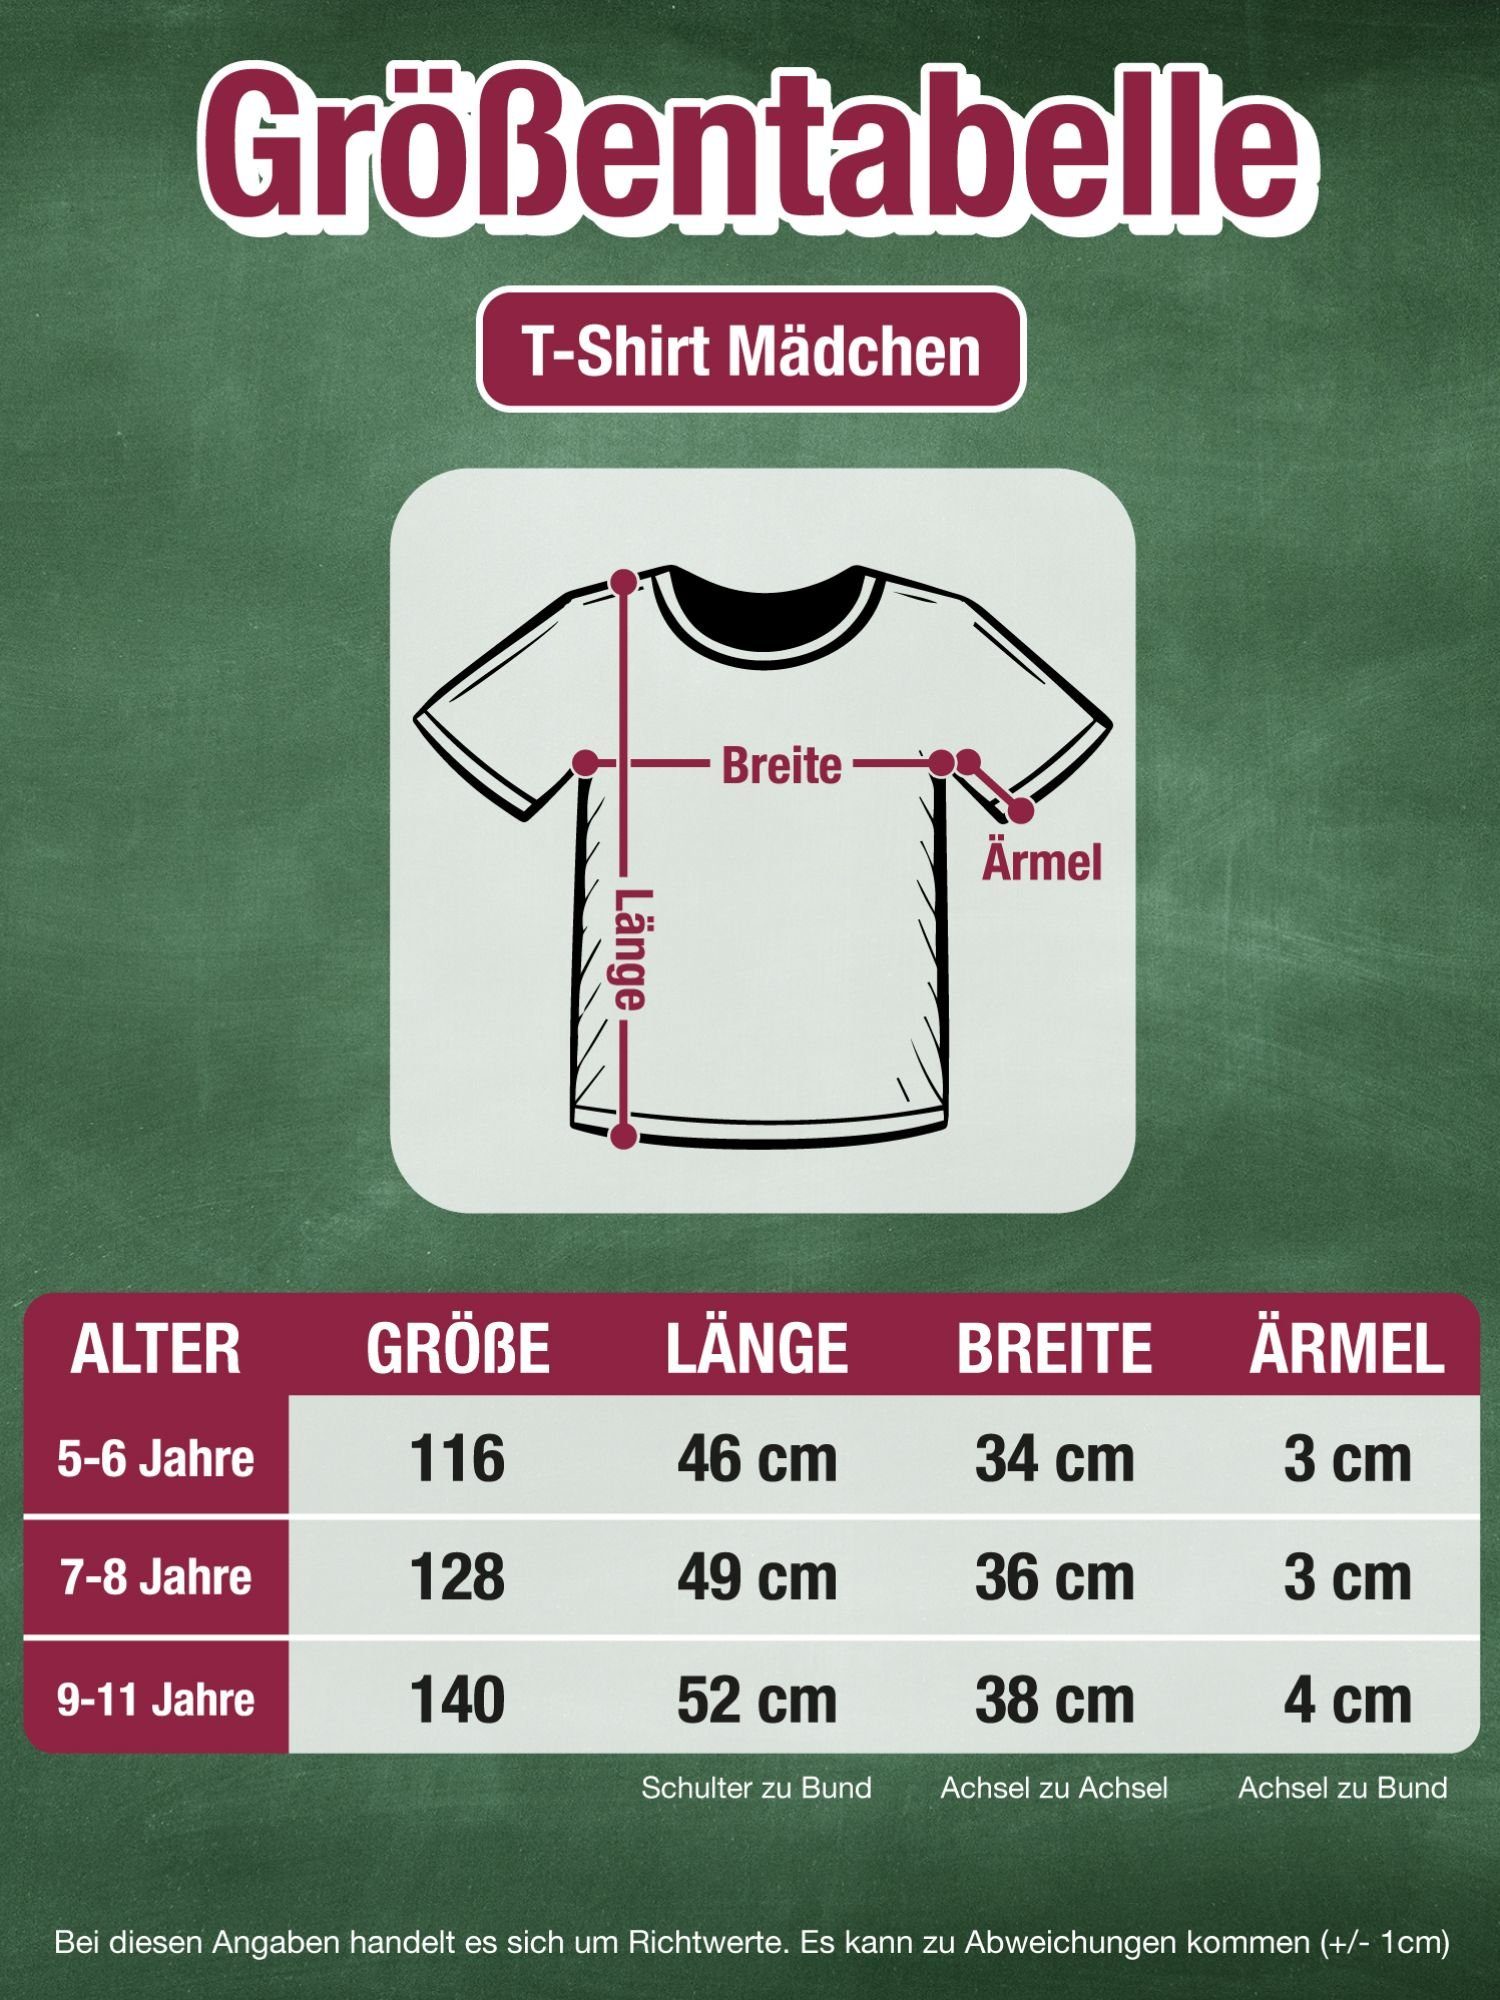 Kinder Kids (Gr. 92 -146) Shirtracer T-Shirt Bye Bye Kindergarten ich glitzer jetzt in der Schule Einhorn Schultüte - Schulkind 